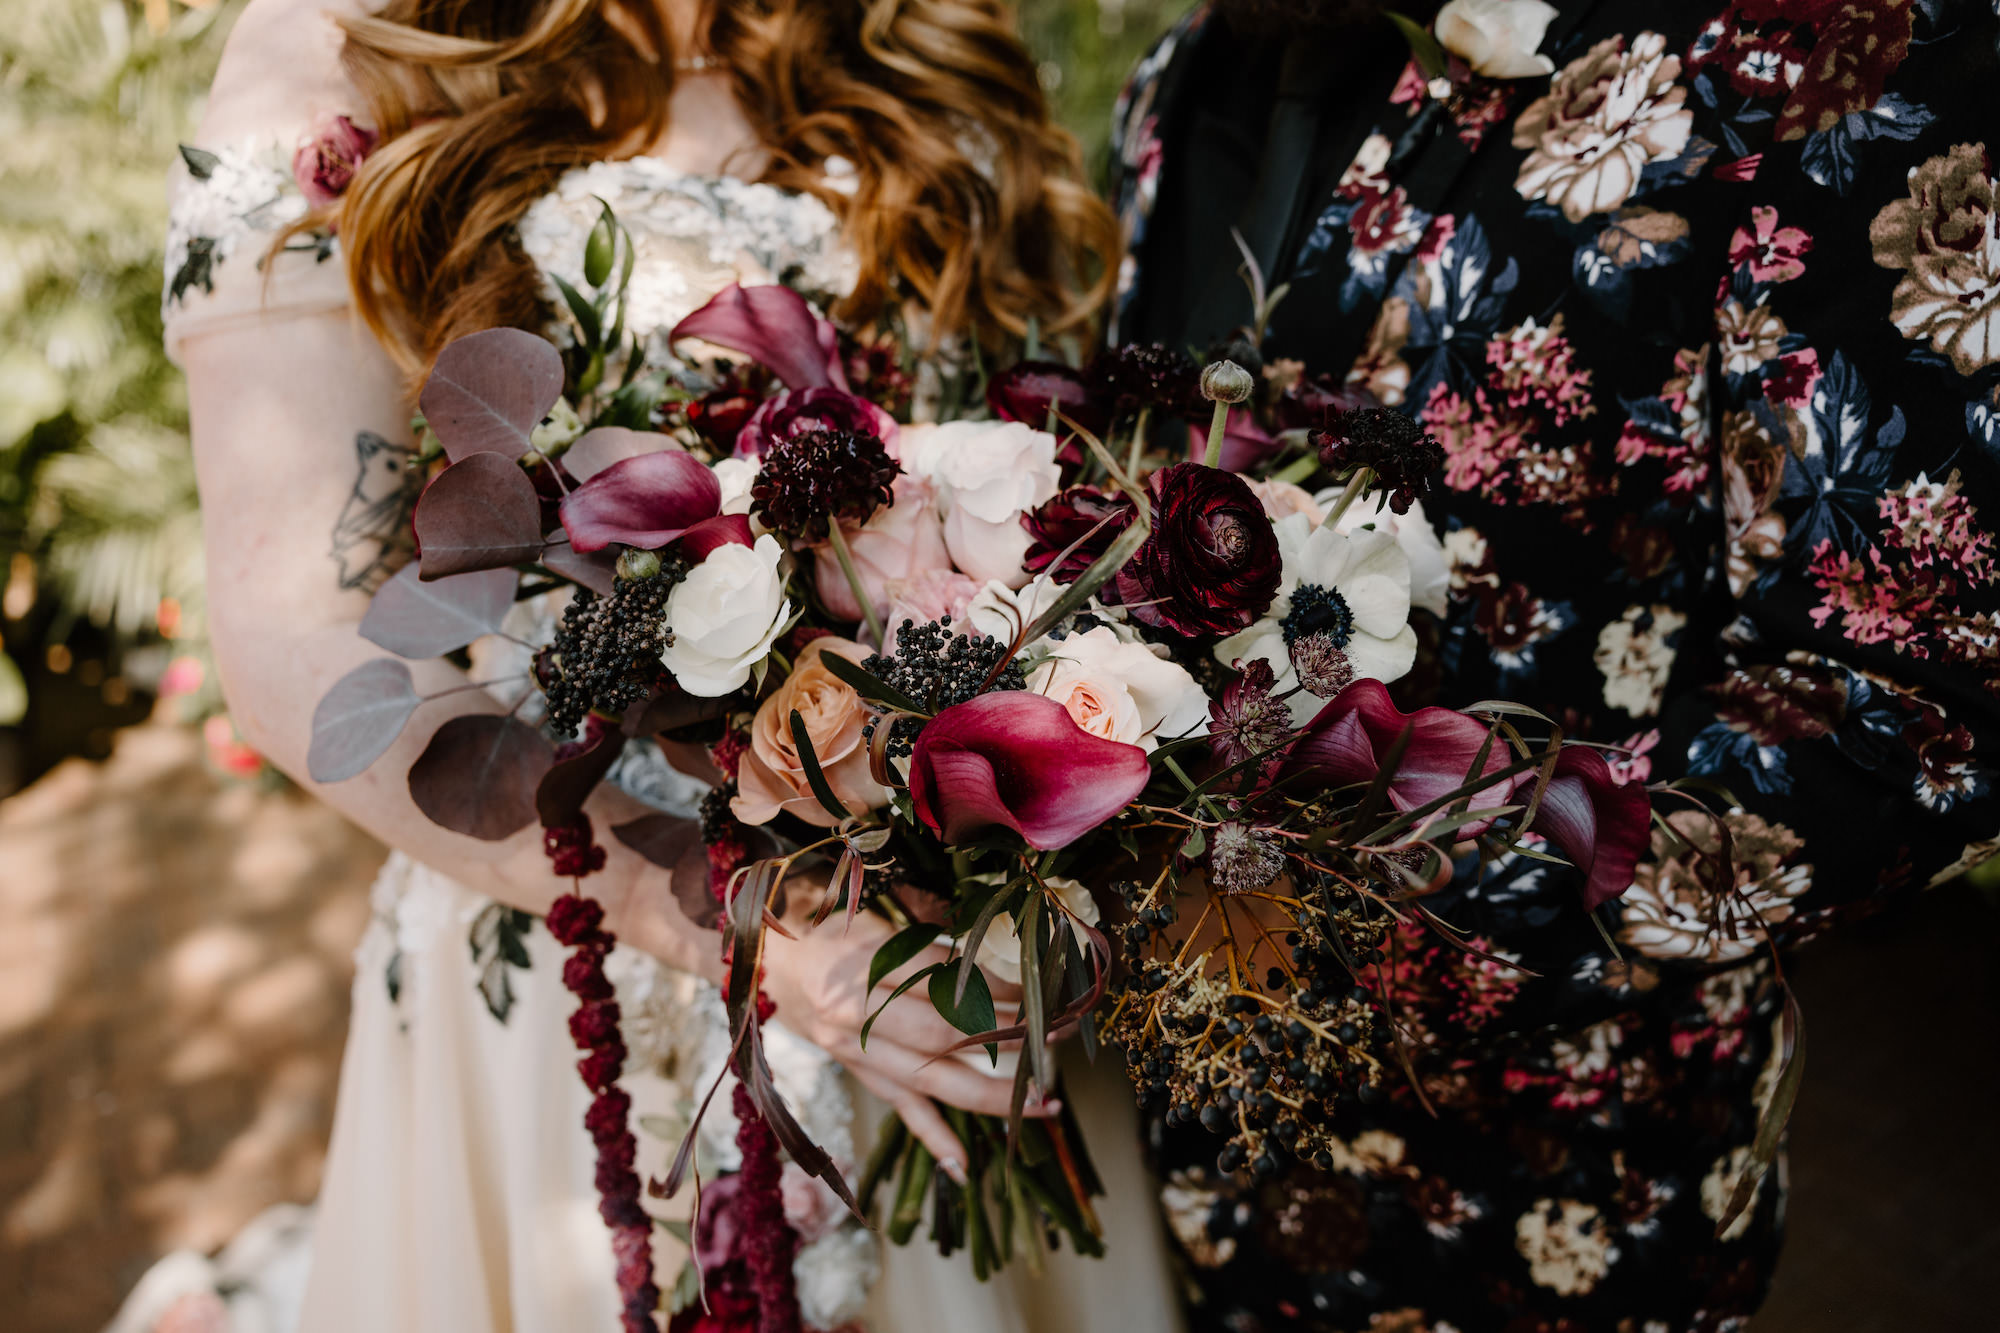 Dark Goth Moody Floral Bridal Wedding Bouquet Ideas